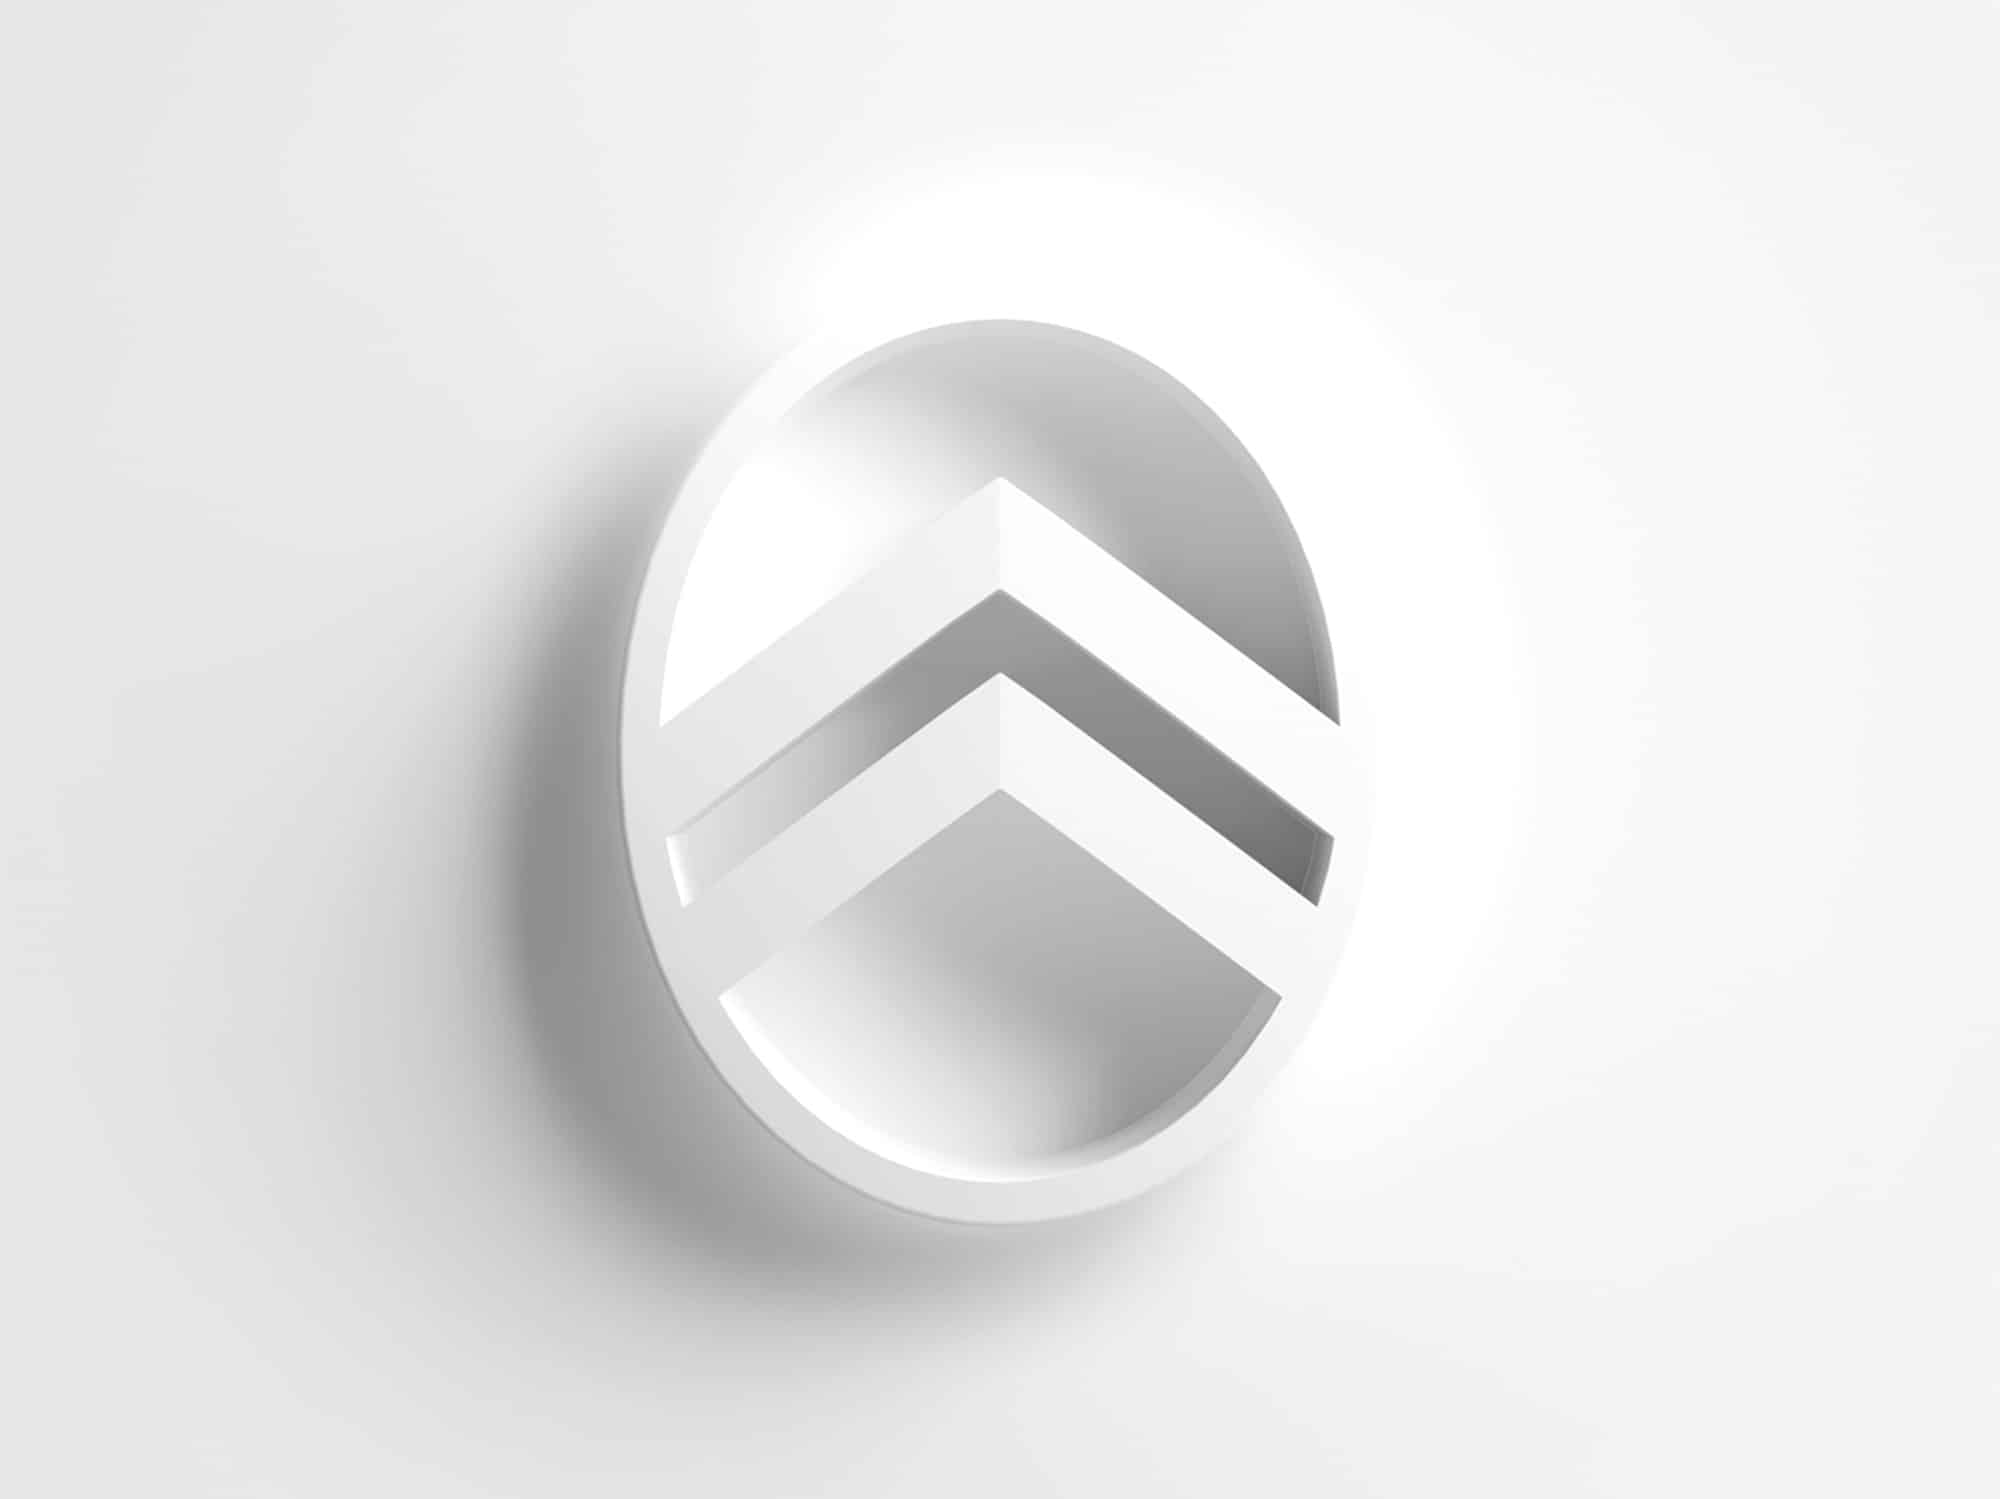 citroen 2022 logo 3d white